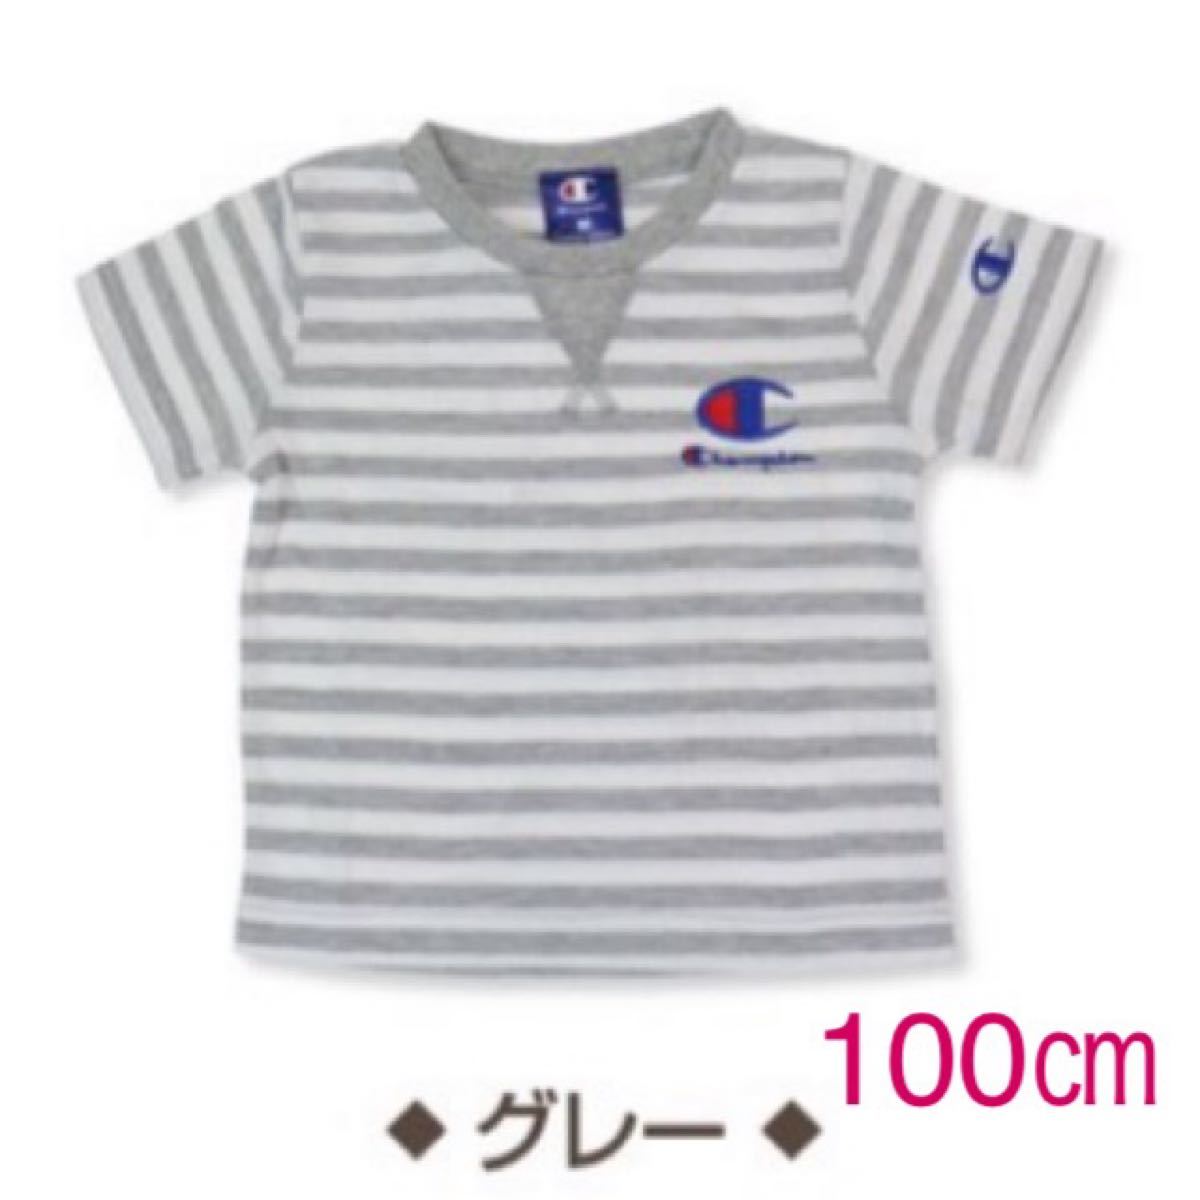 【新品未使用】Champion ボーダー 半袖Tシャツ 100